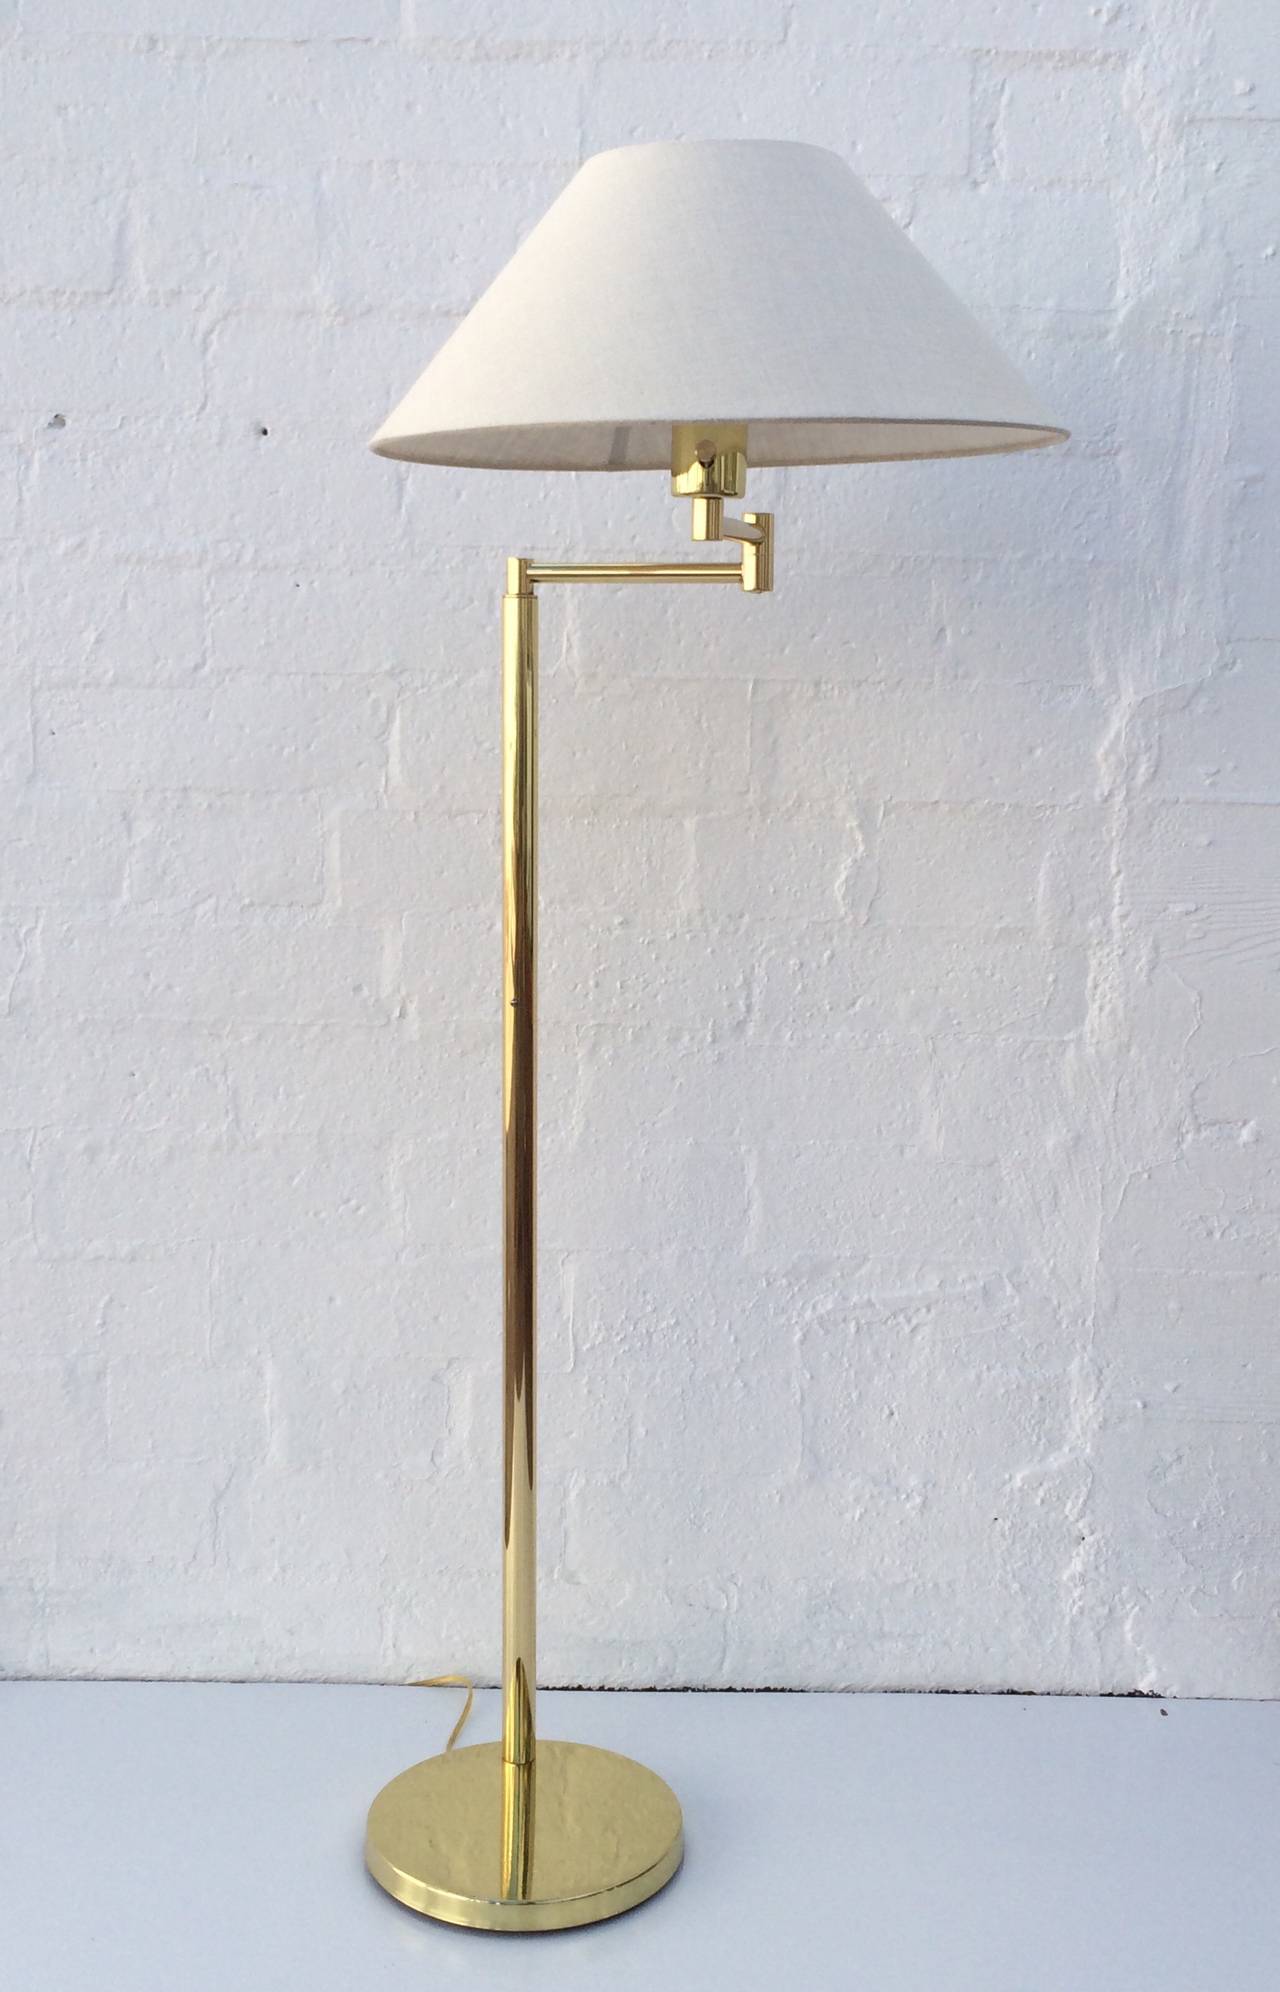 American Polished Brass Adjustable Floor Lamp by Walter Von Nessen